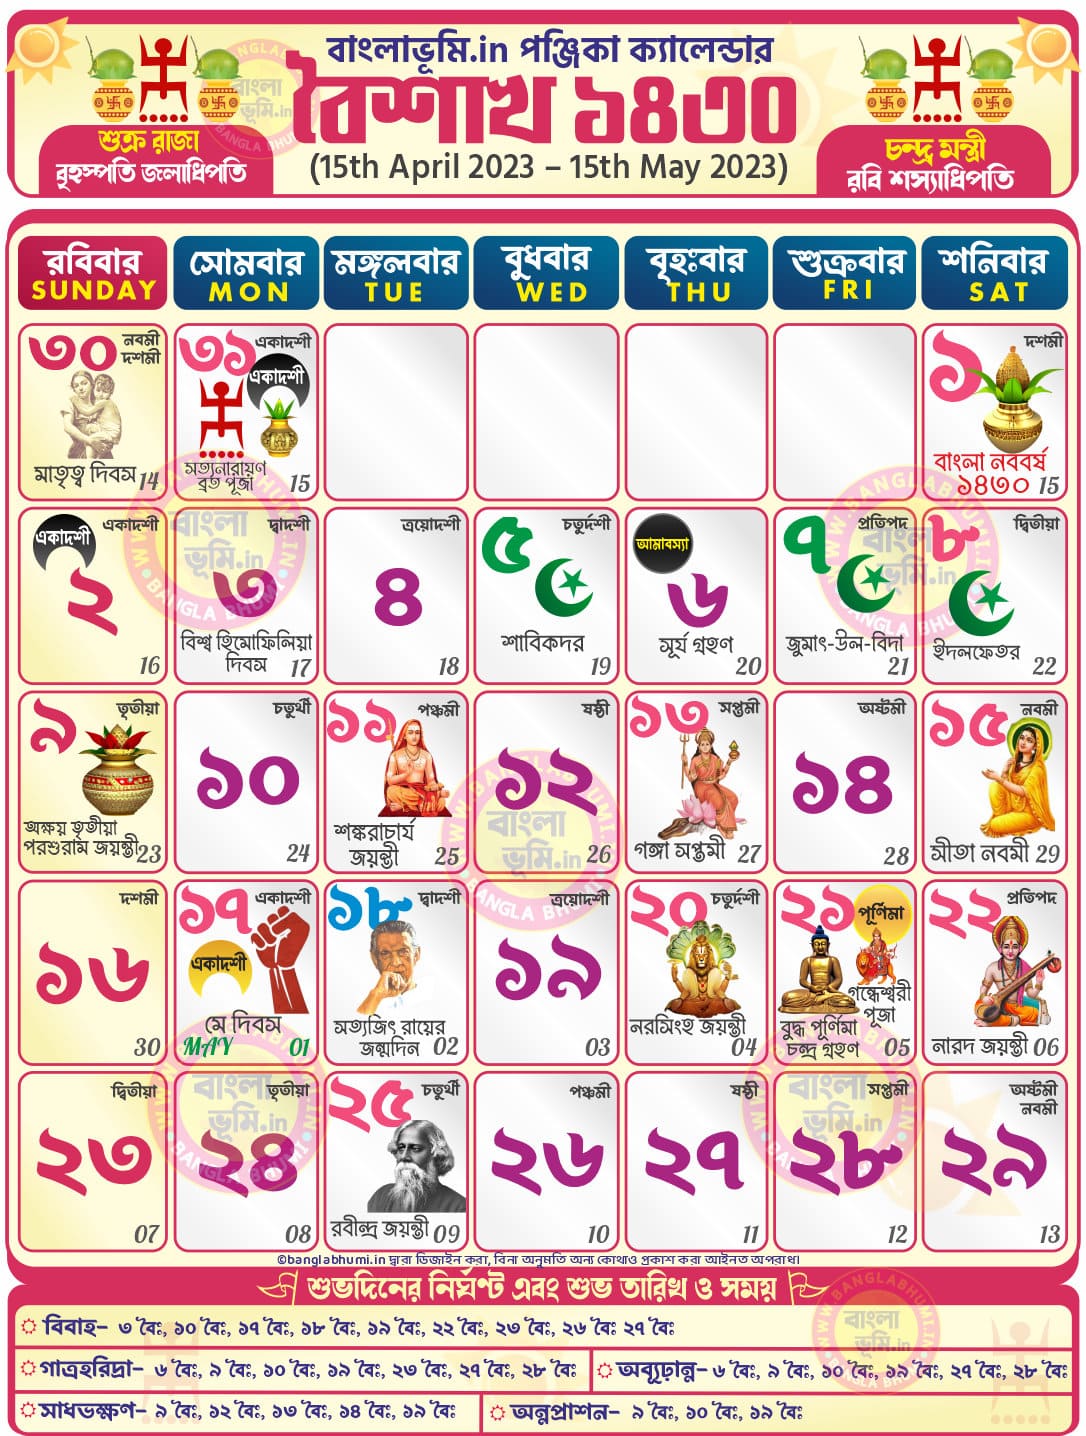 Baisakh 1430 - Bengali Calendar 1430: বৈশাখ ১৪৩০ - বাংলা কালেন্ডার ১৪৩০